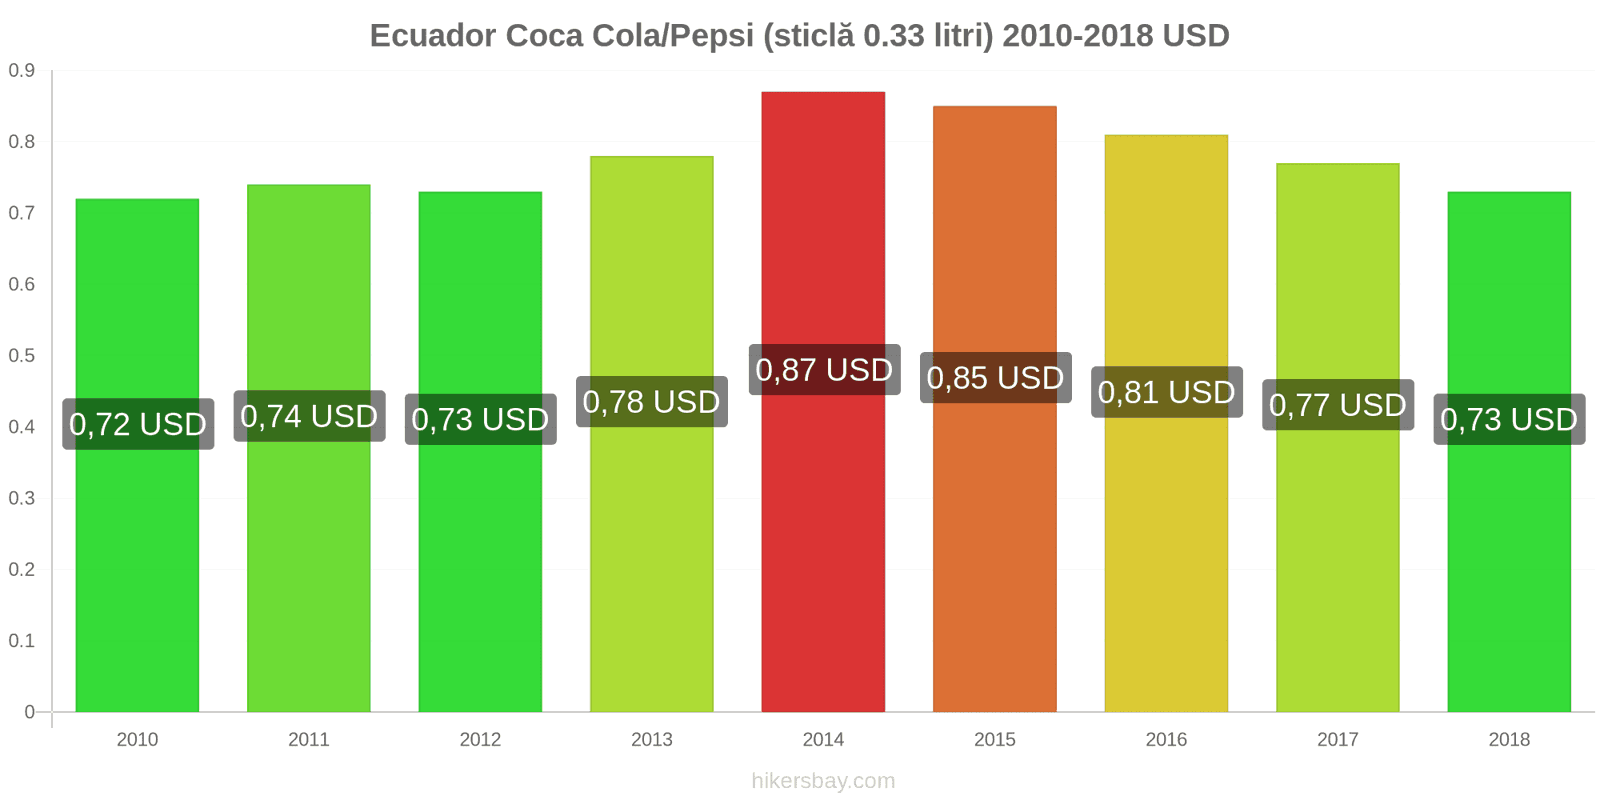 Ecuador schimbări de prețuri Coca-Cola/Pepsi (sticlă de 0.33 litri) hikersbay.com